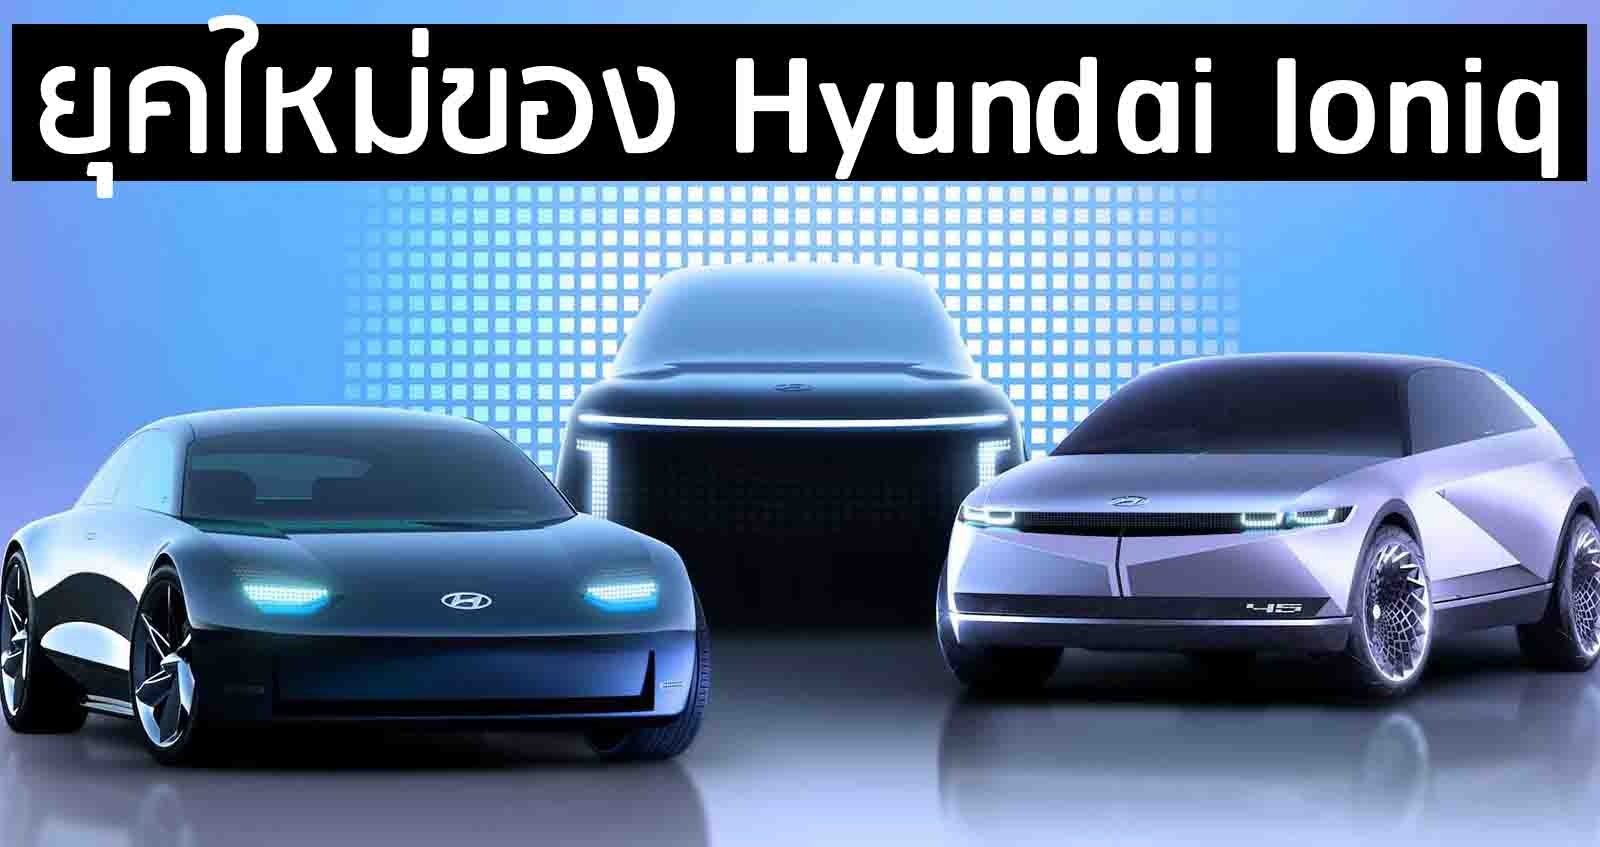 Hyundai Ioniq ทีเซอร์ ยุคใหม่ของรถยนต์ไฟฟ้า